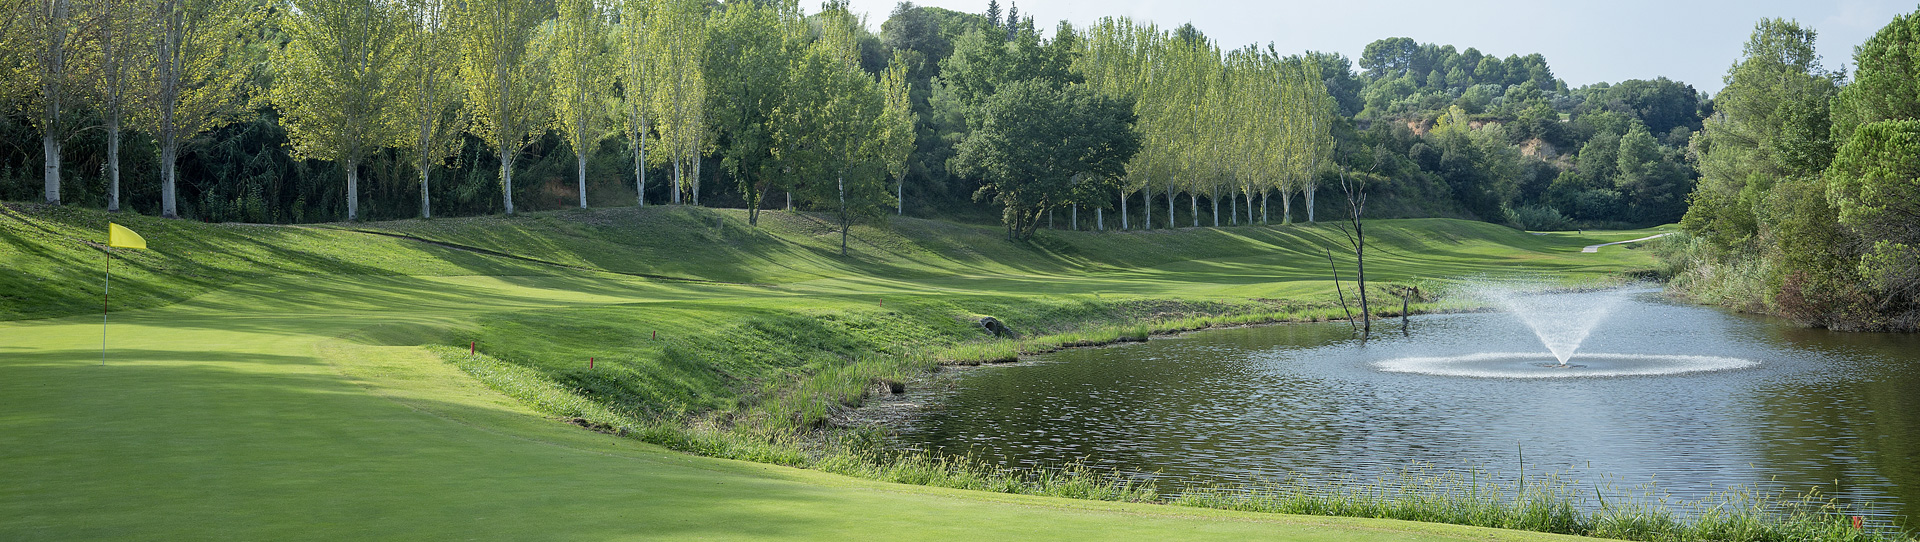 Spain golf courses - Club Golf Barcelona - Photo 1